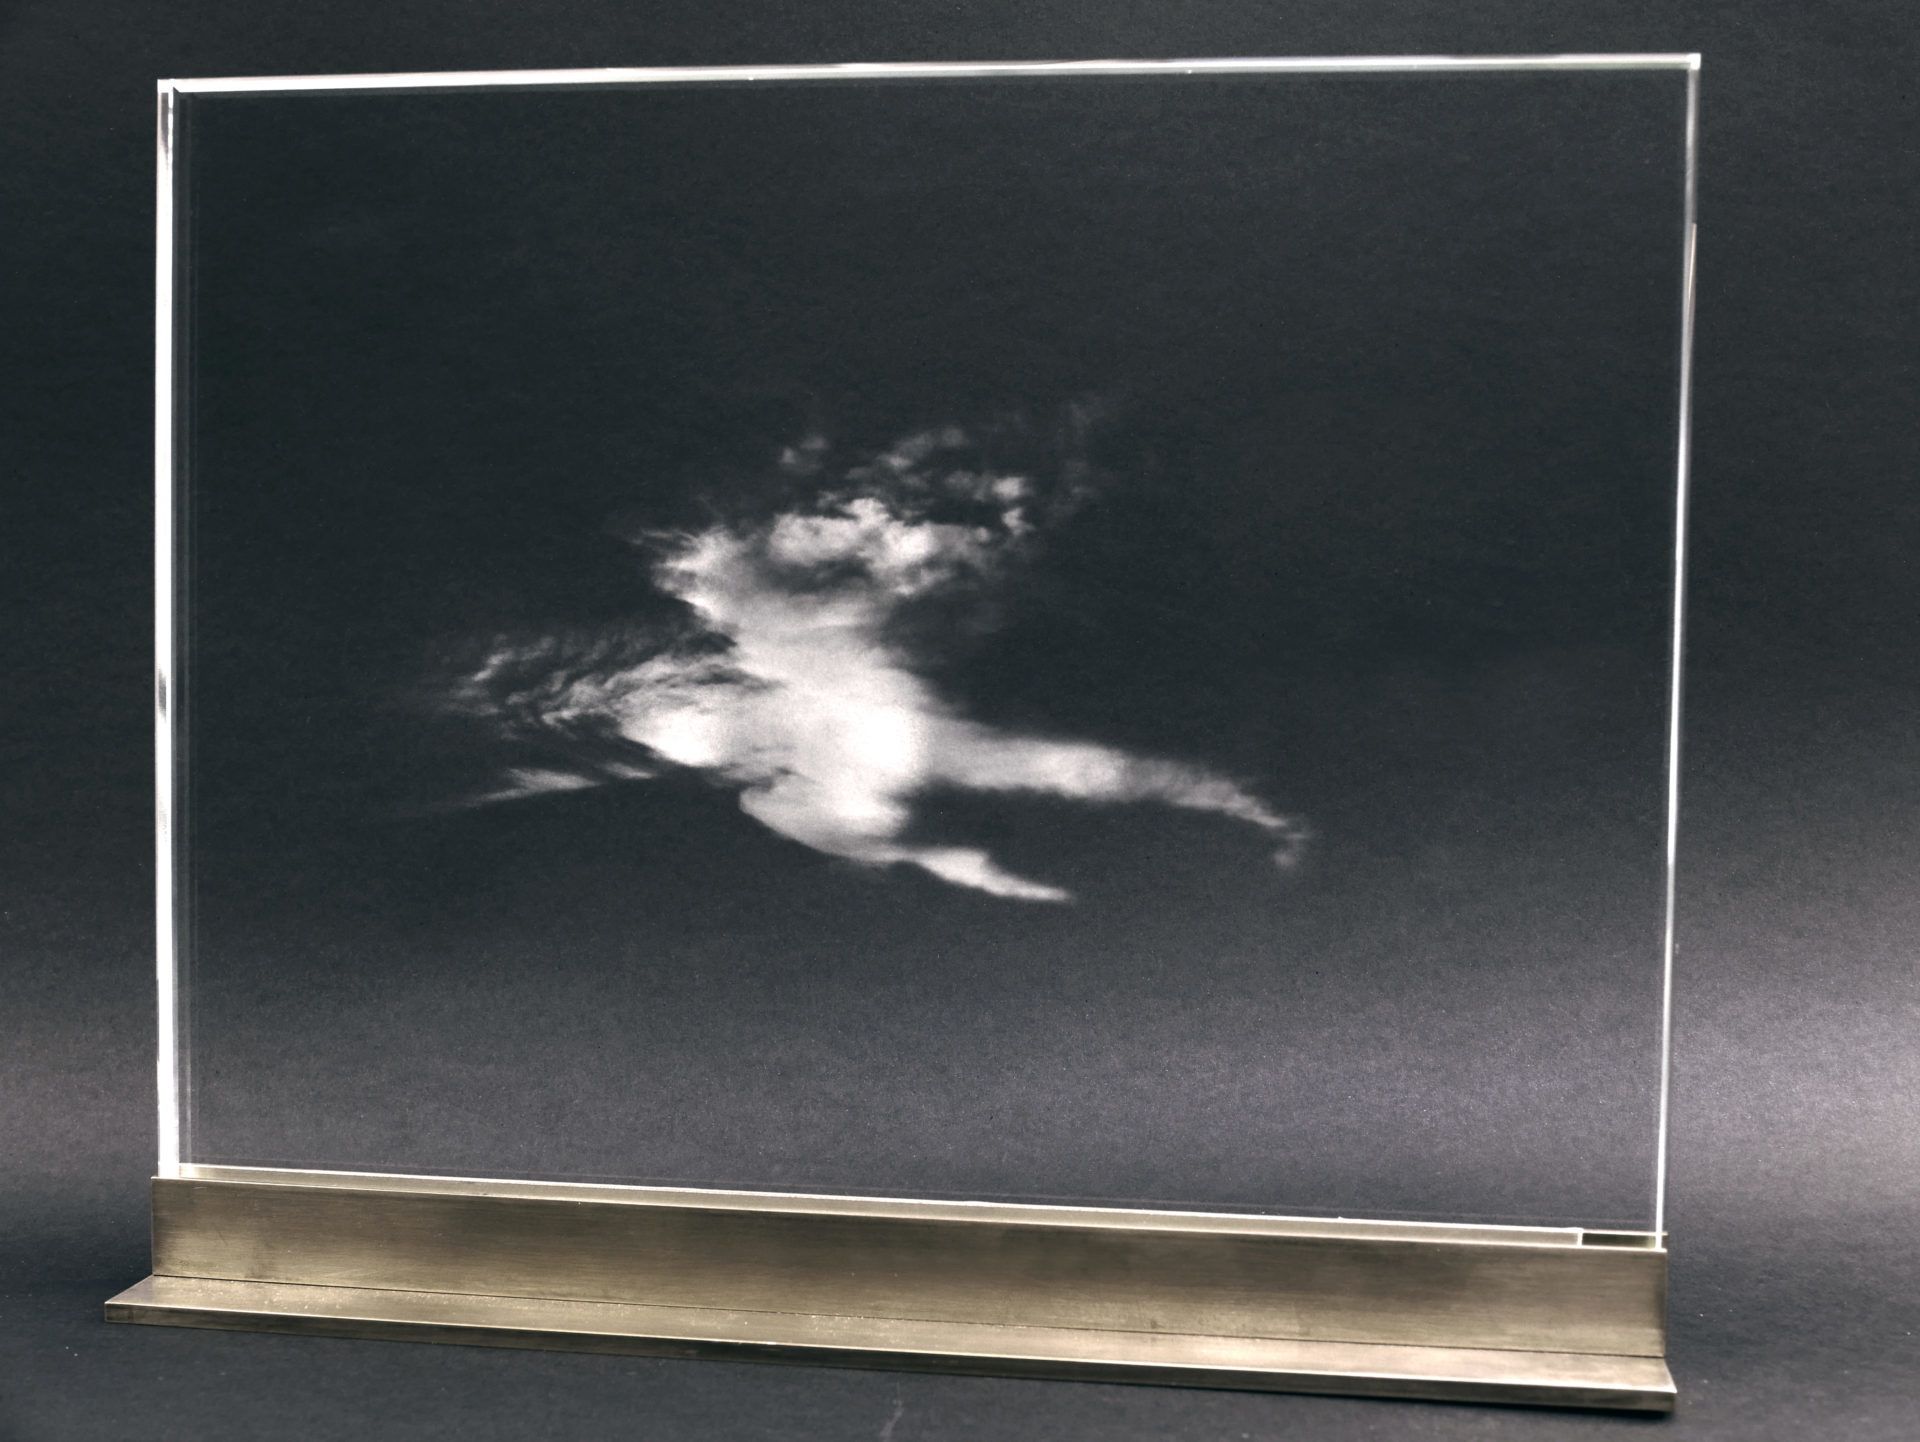 Nebulagramme 7, 2017, Impression laser à l'intérieur d'une plaque de verre, 24 x 30 x 1,5 cm © Charlotte Charbonnel. Courtesy Backslash, Paris. Crédit photo : Charlotte Charbonnel